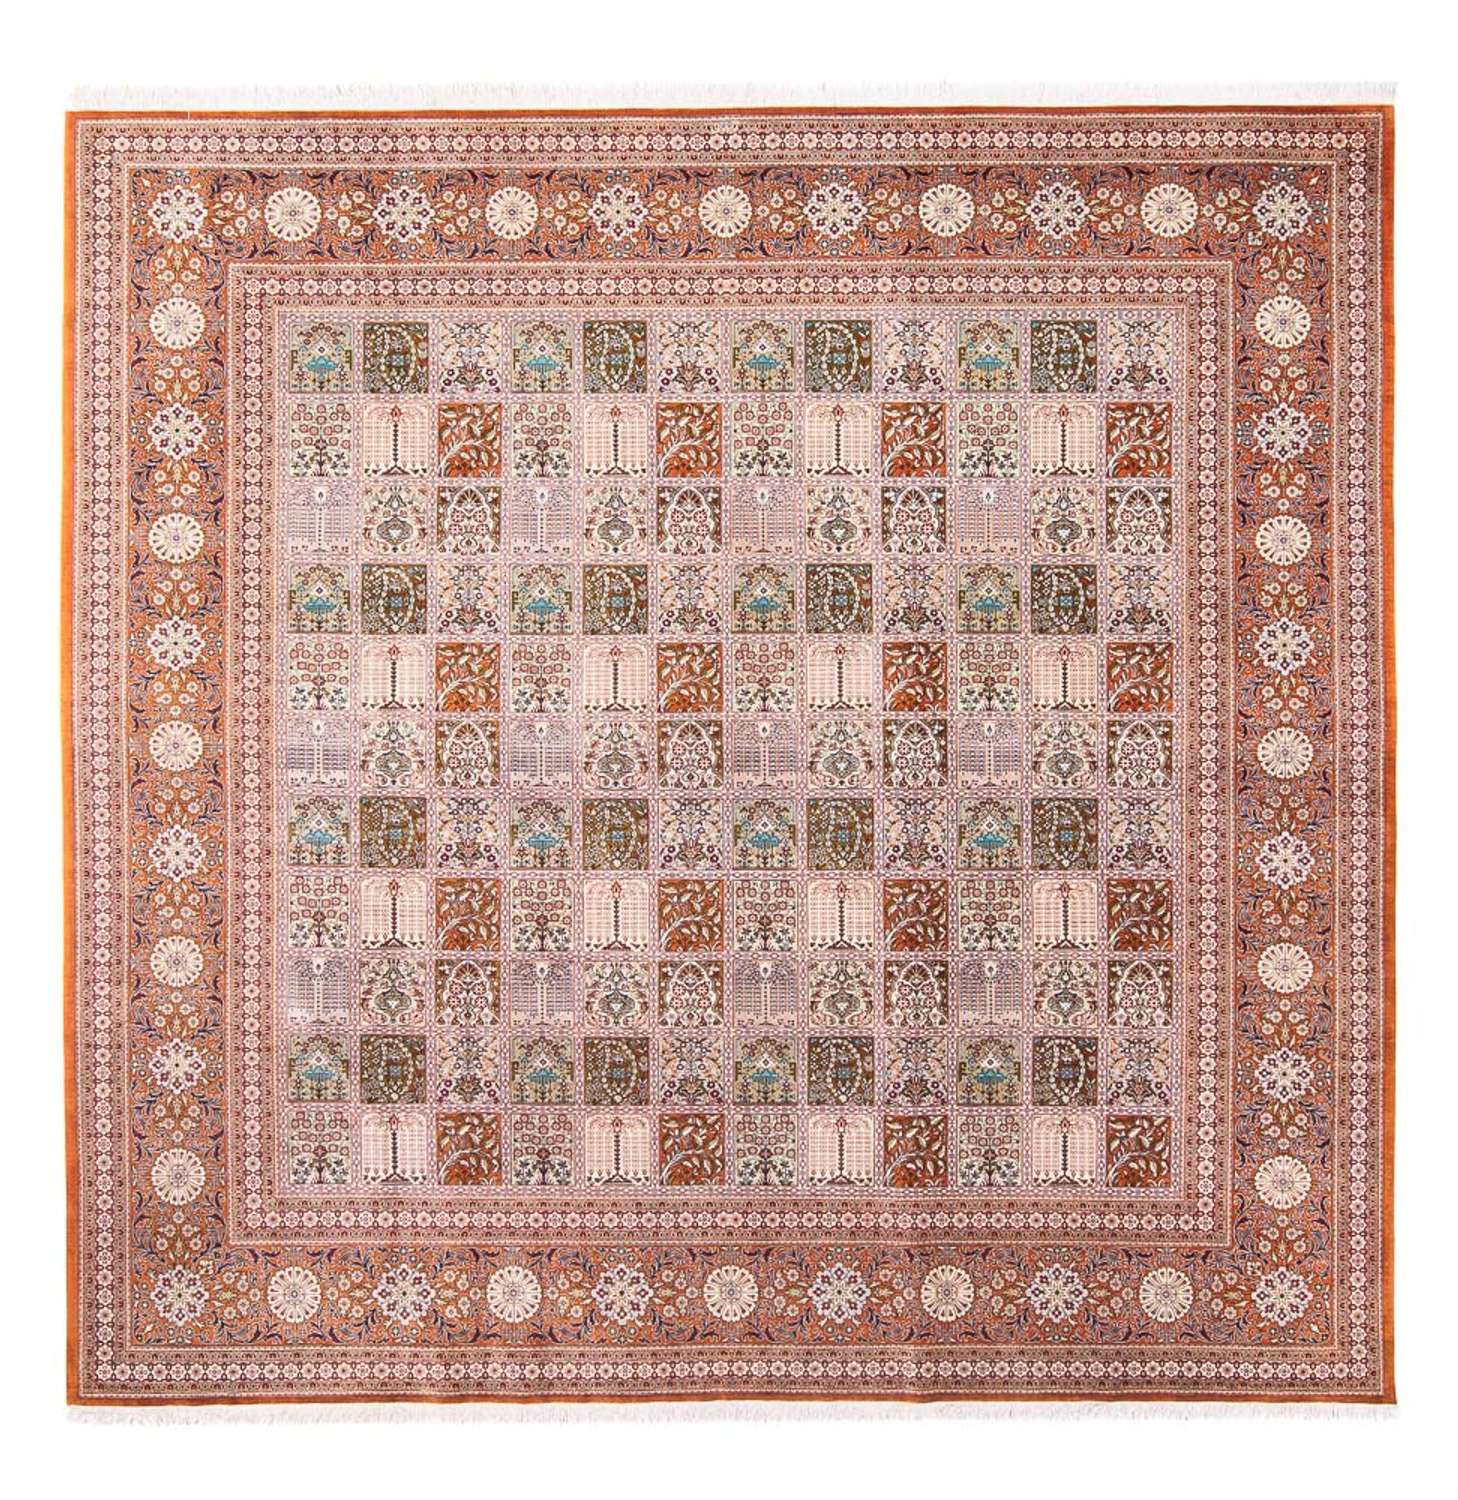 Tappeto di seta - Ghom seta - Premio quadrato  - 250 x 250 cm - multicolore